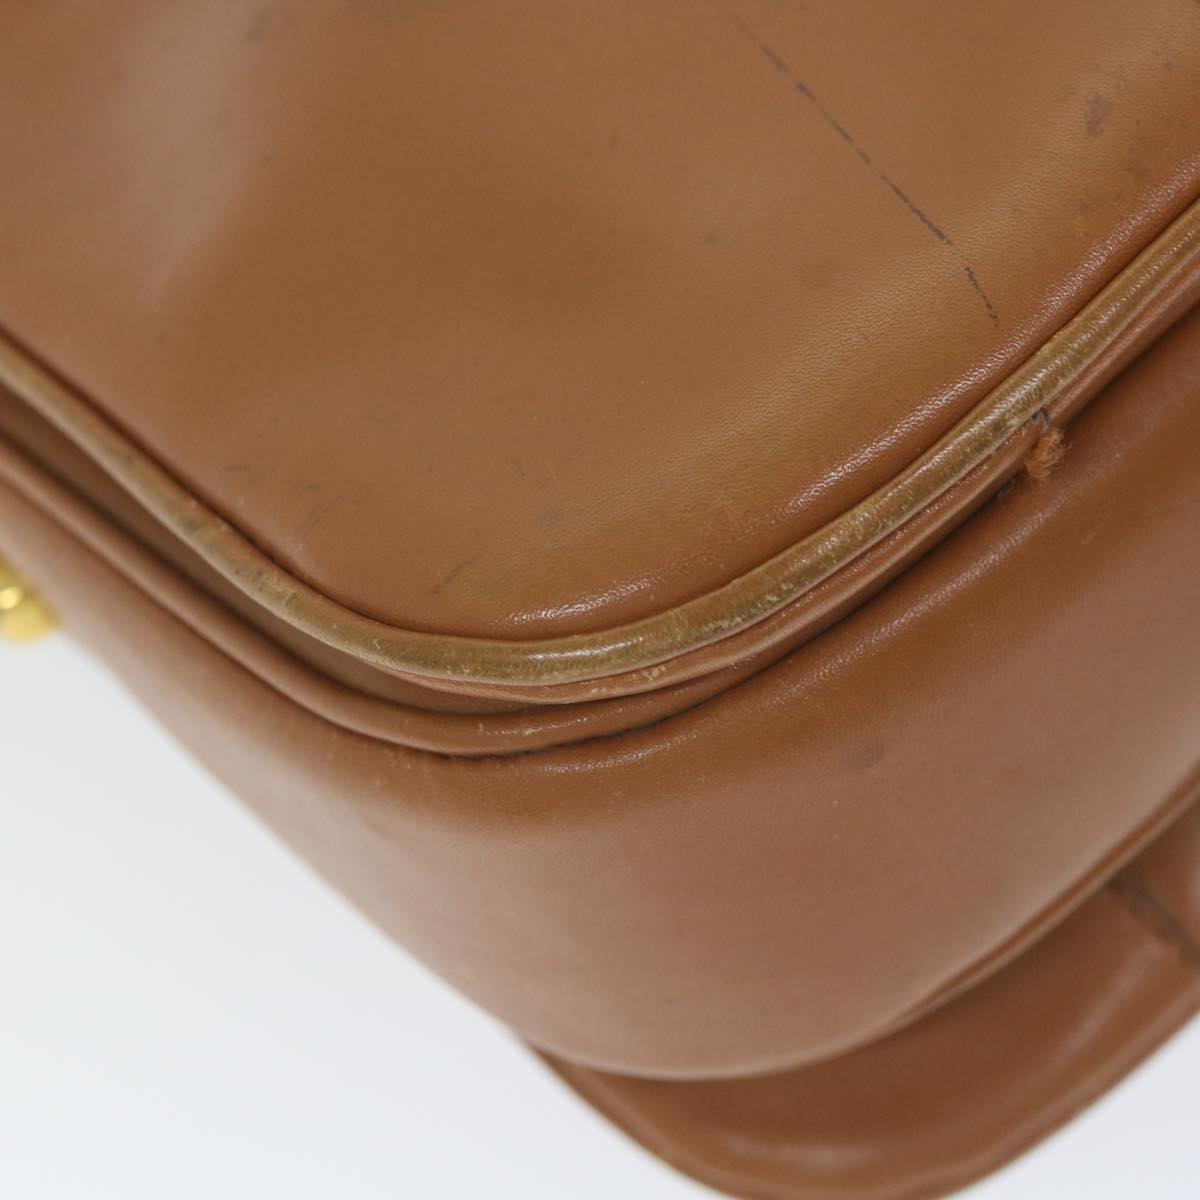 CELINE Shoulder Bag Leather Brown Auth ar10831B